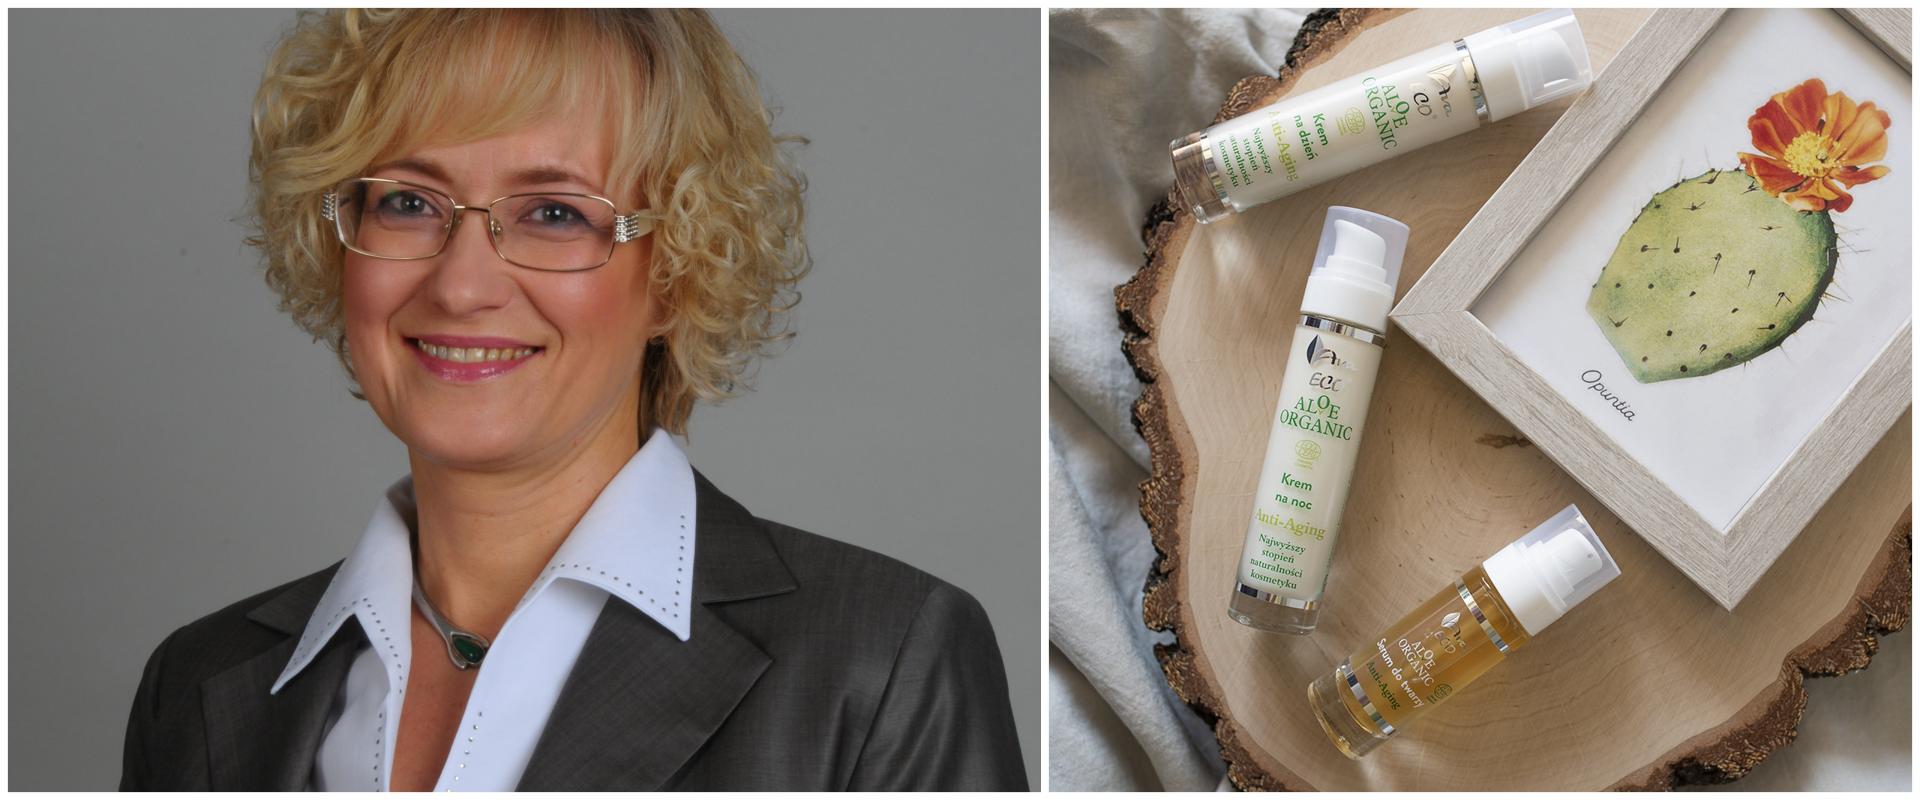 Laboratorium Kosmetyczne Ava: klienci coraz świadomiej wybierają produkty naturalne